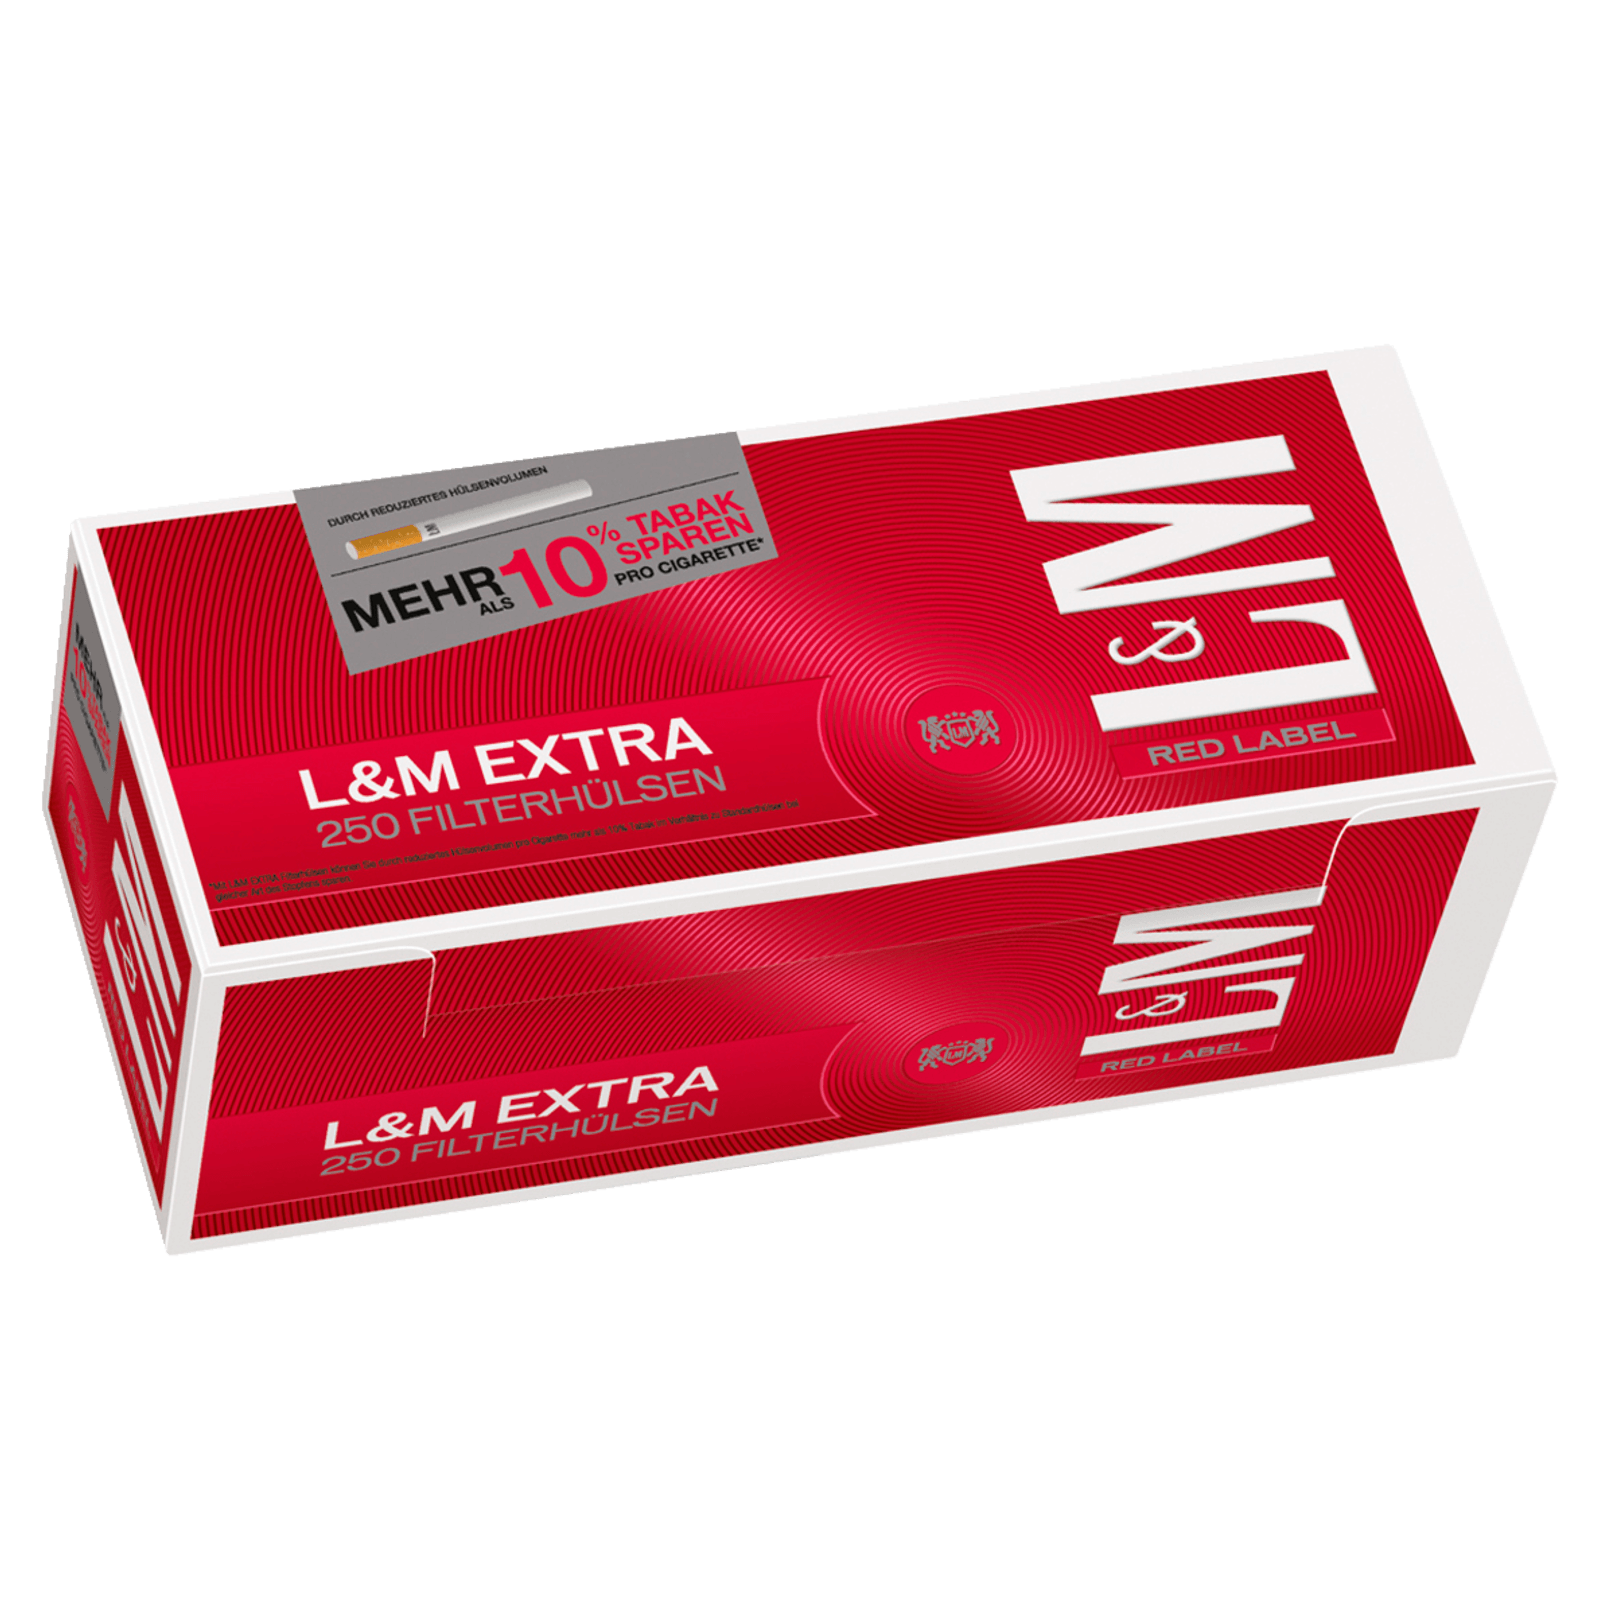 L&M Red Label Extra Hülsen 250 Stück  für 2.00 EUR